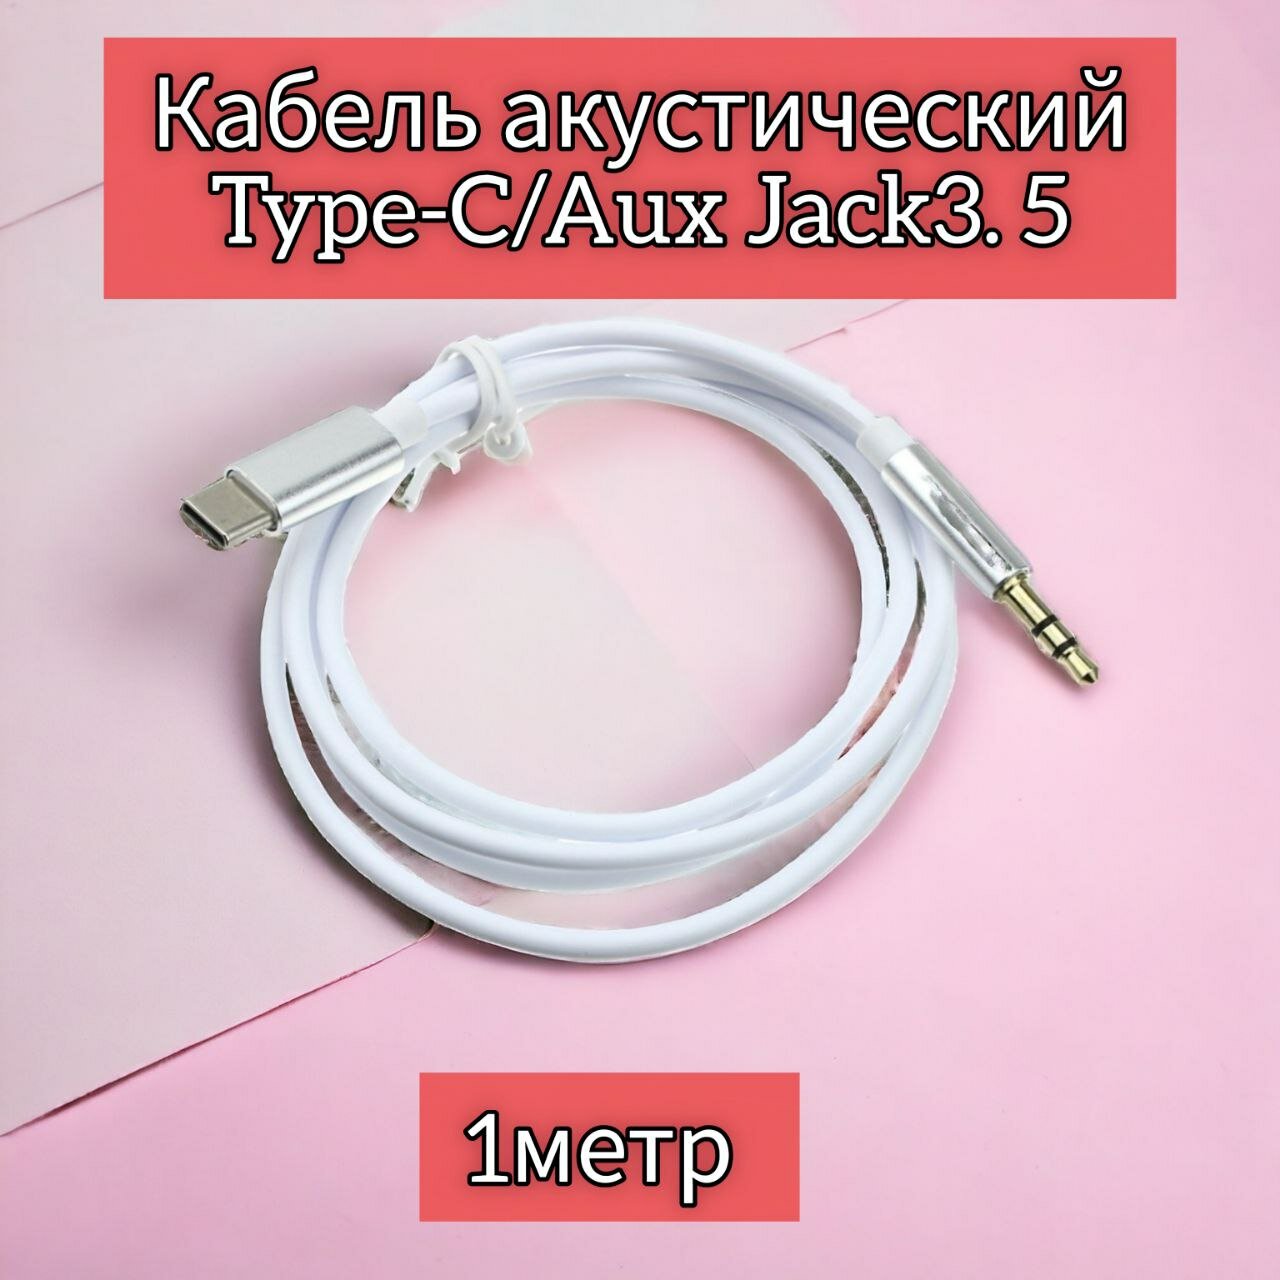 Аудио кабель ATMT для мобильных устройств USB Type-C/3.5 мм, 1 м, белый